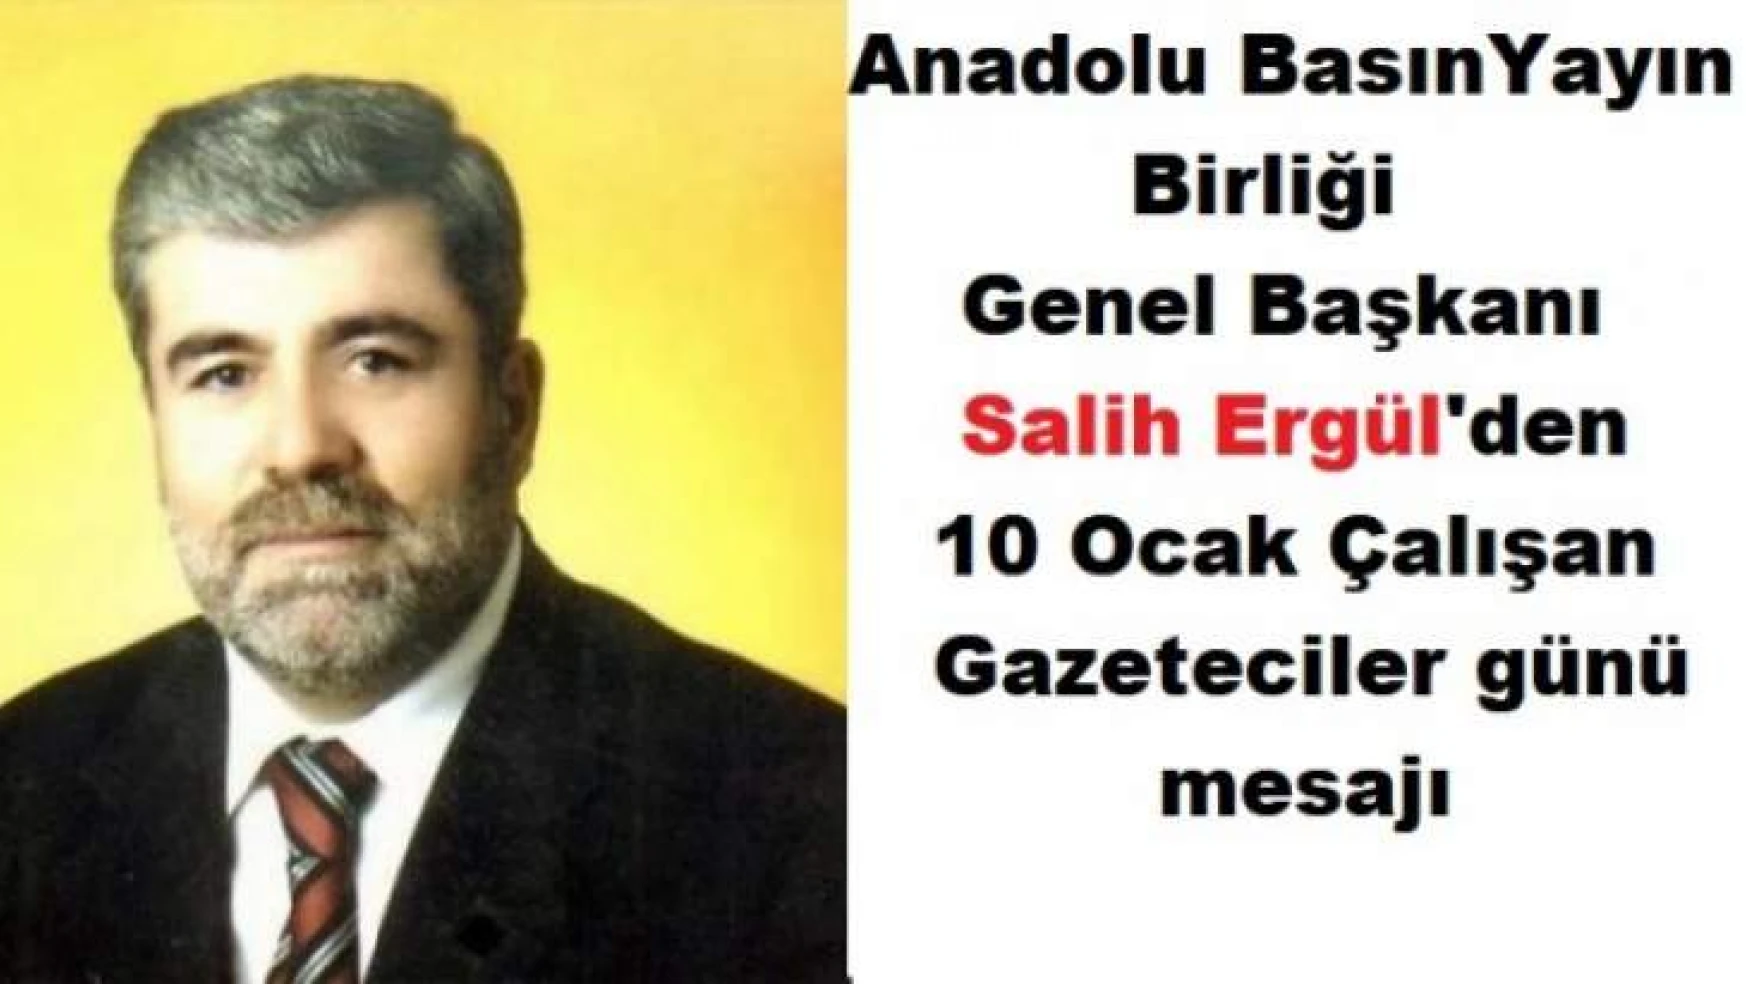 ABYB Genel Başkanı Salih Ergül'den,Çalışan Gazeteciler günü mesajı